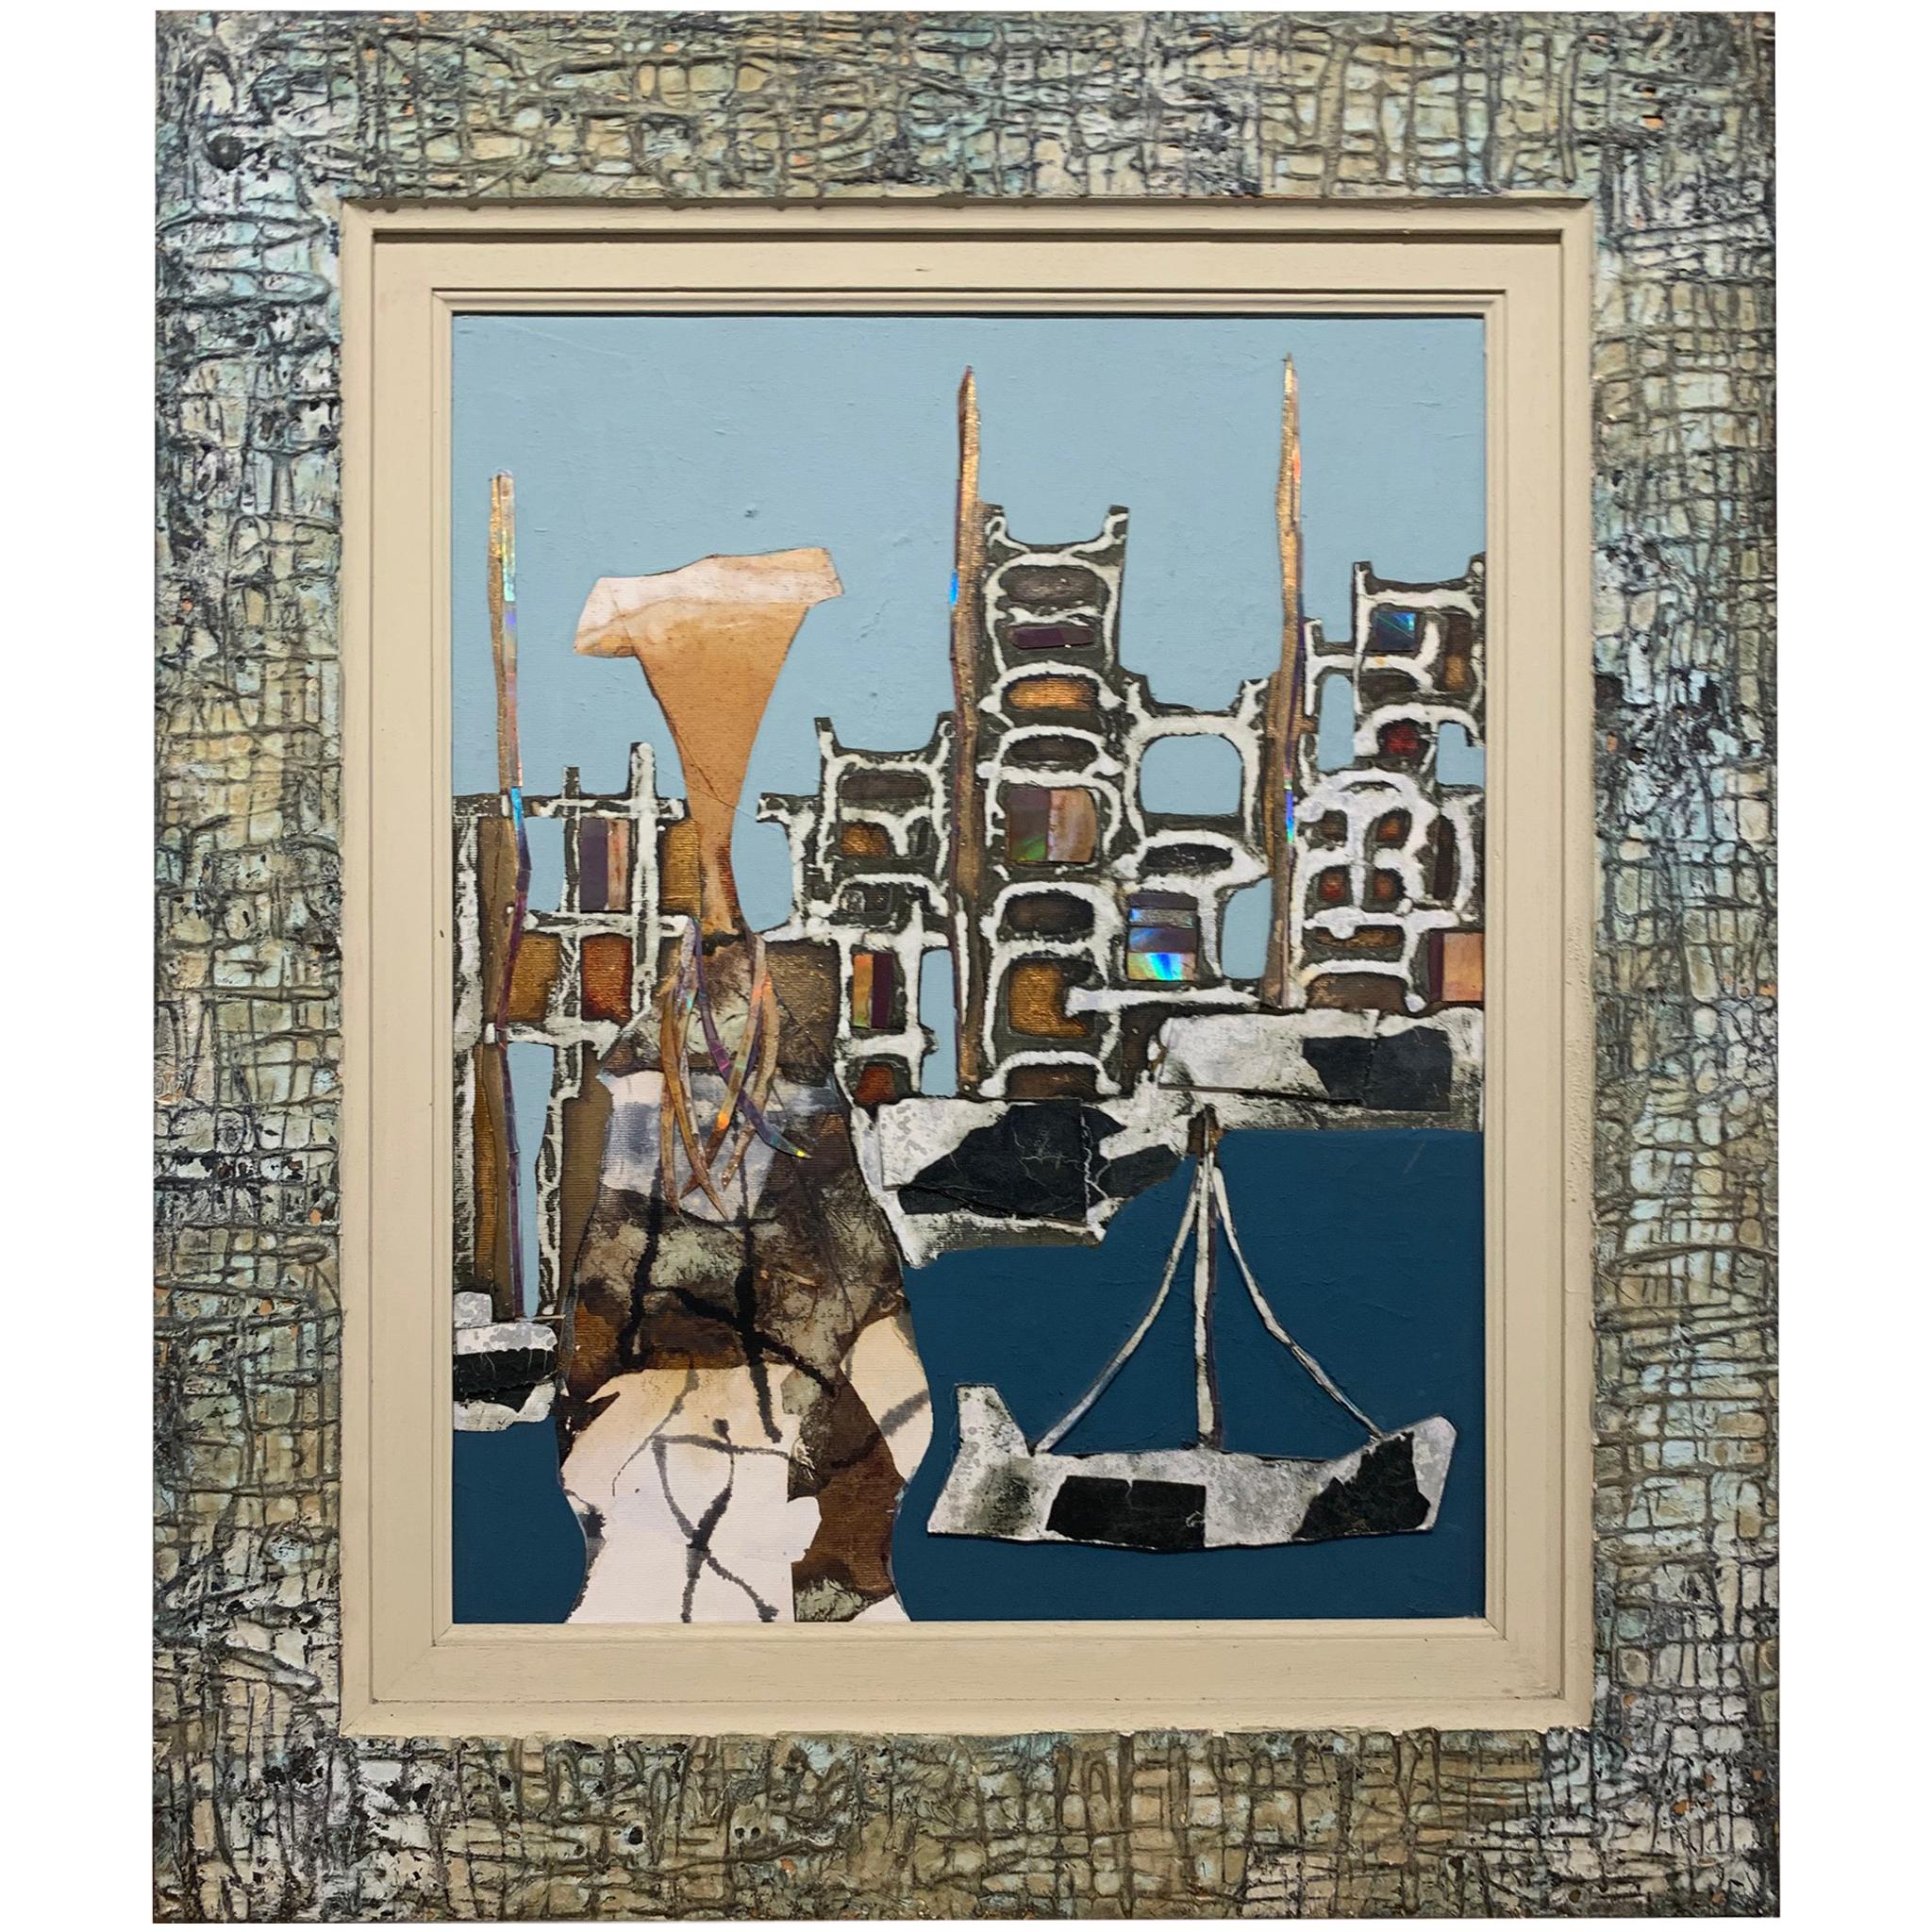 Fishermans Wife –Andrea Stella-Figuratives abstraktes Gemälde mit gemischten Medien (Zeitgenössisch), Mixed Media Art, von ANDREA STELLA